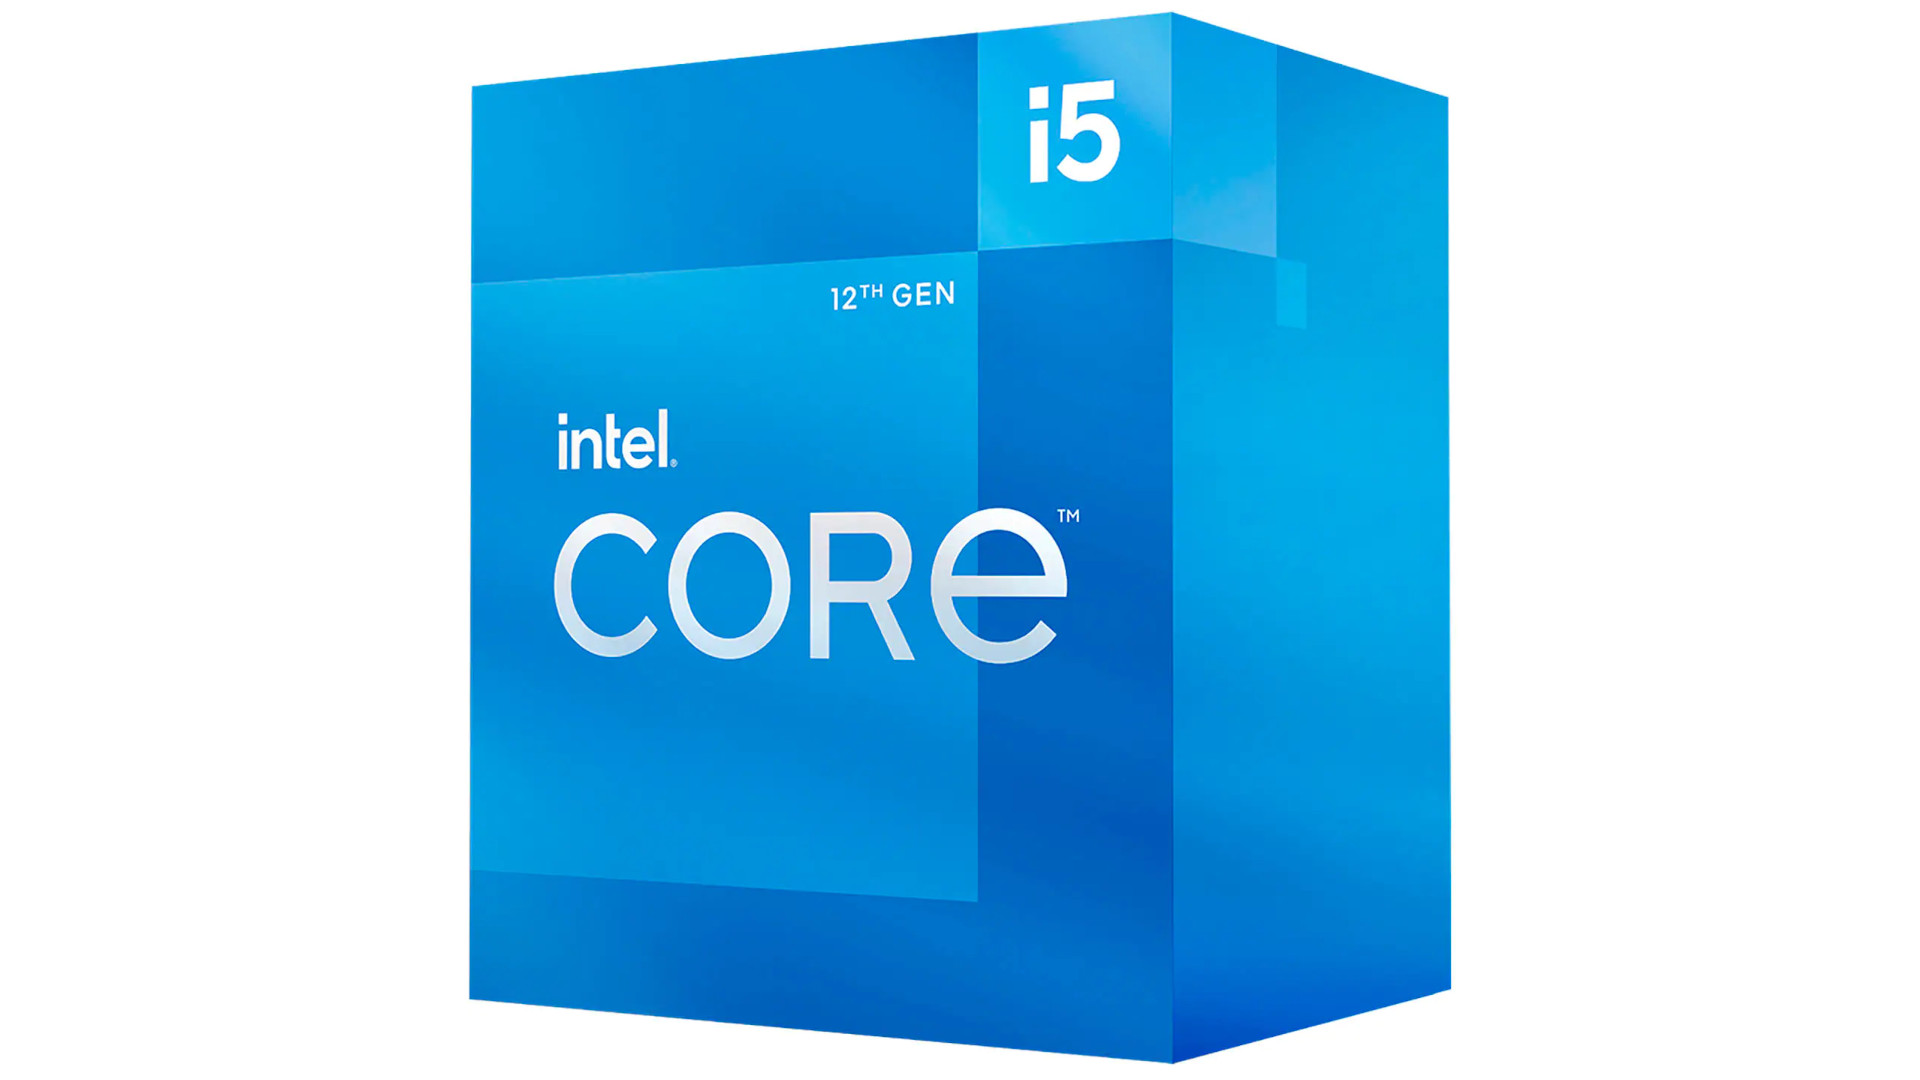 De beste gaming-CPU is de Intel Core i5 12400